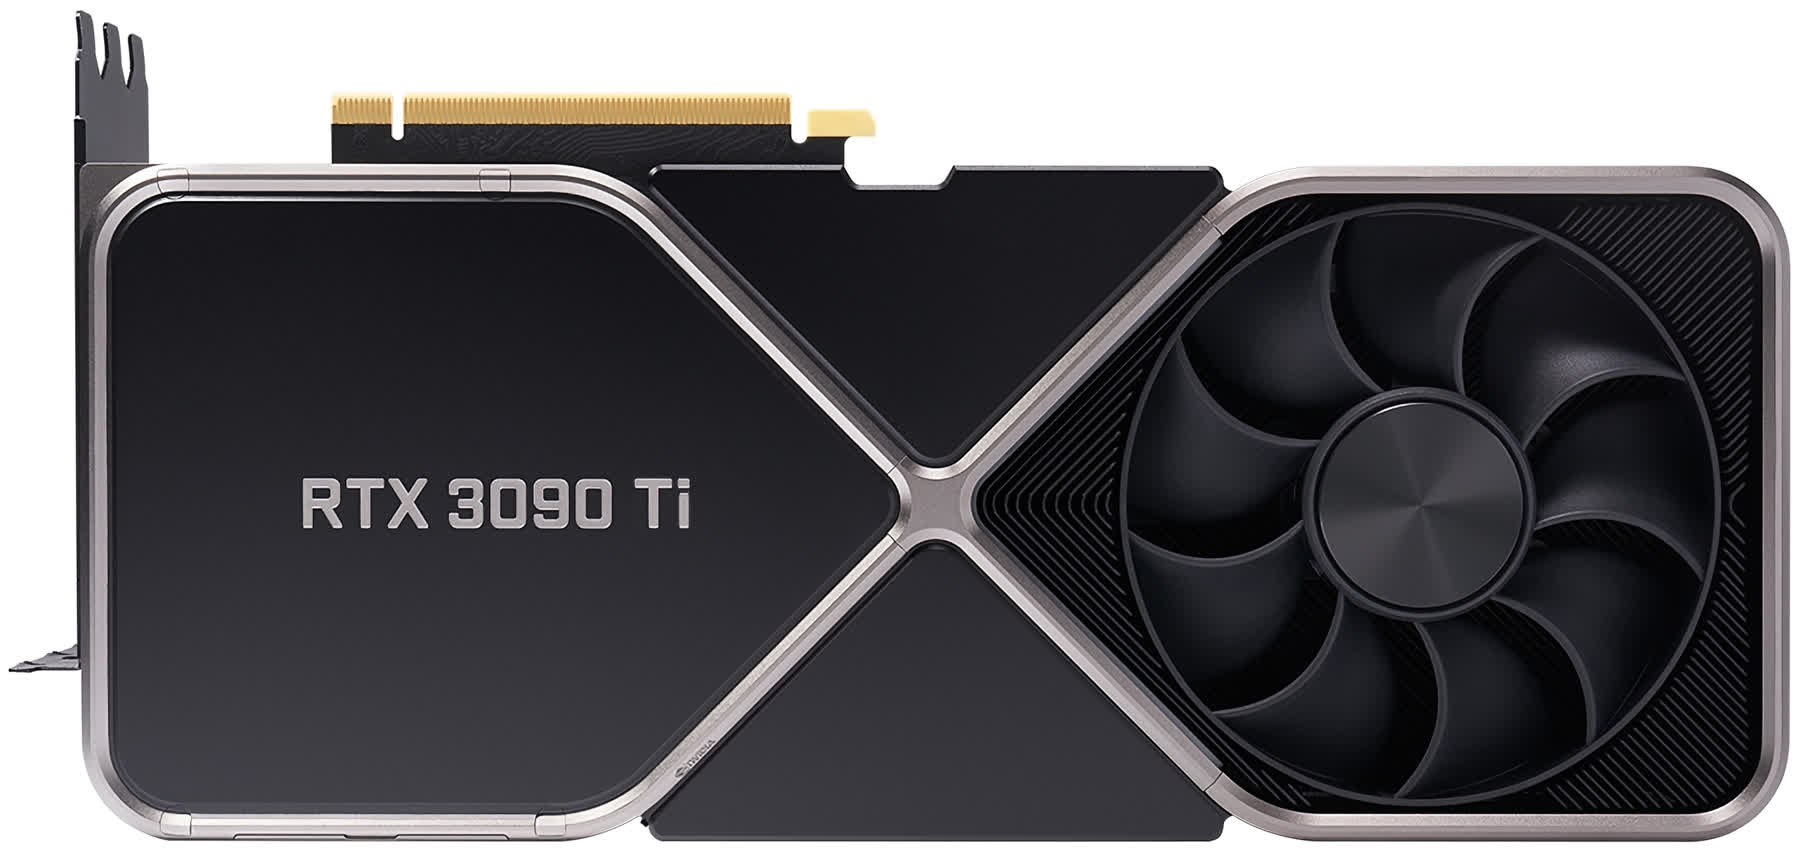 Nvidia teases RTX 3090 Ti flagship consumer GPU